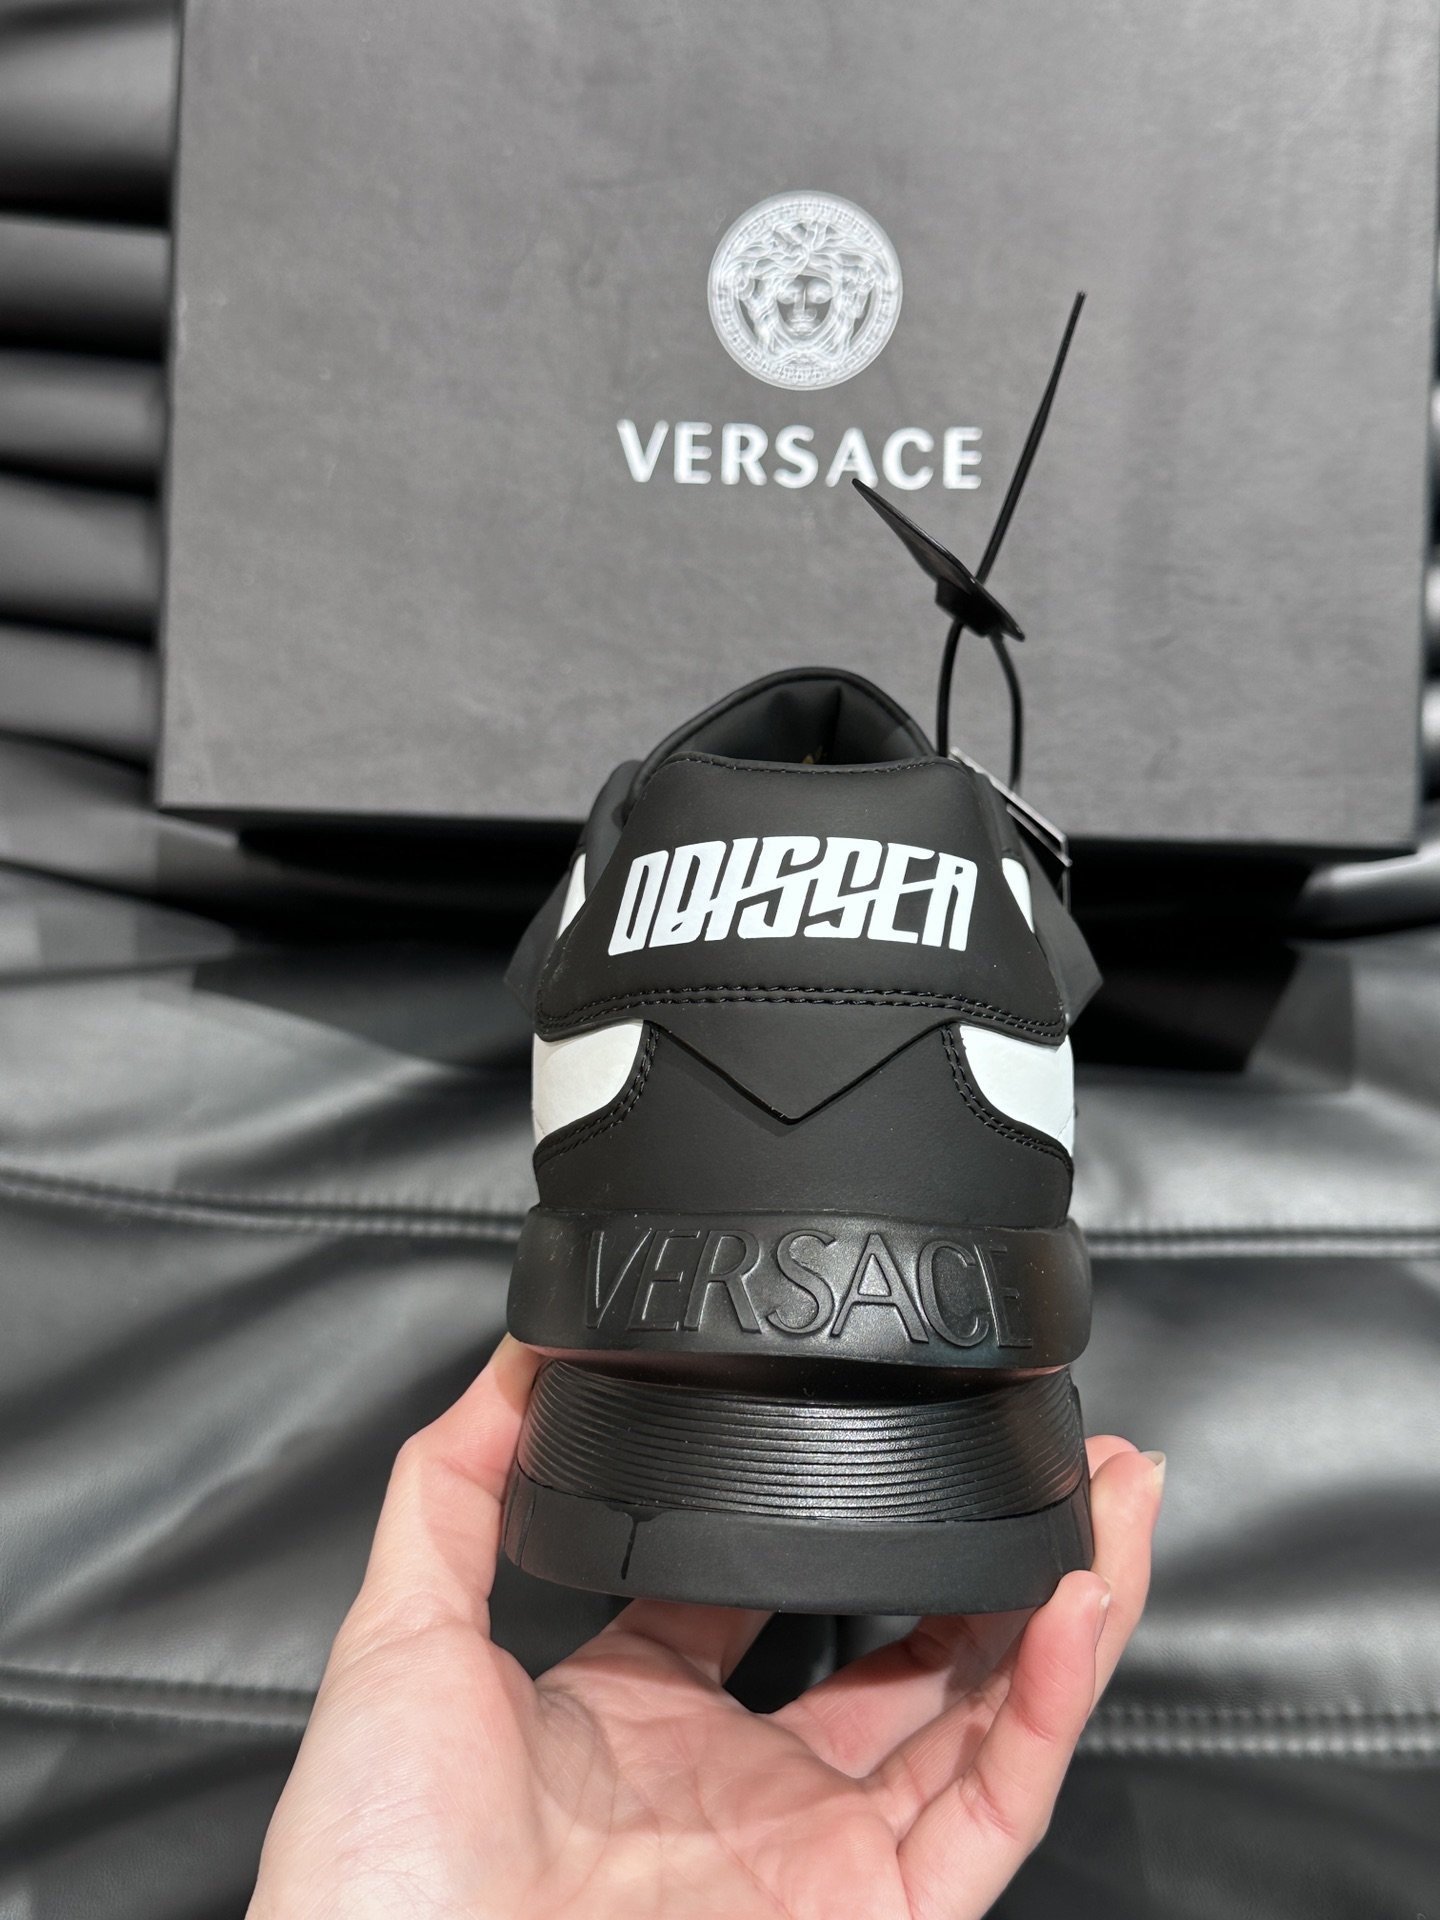 VersaceOdissea艺术感超强的飞船鞋整双鞋很具备结构感和线条感干净利落也能让造型充满很强的视觉